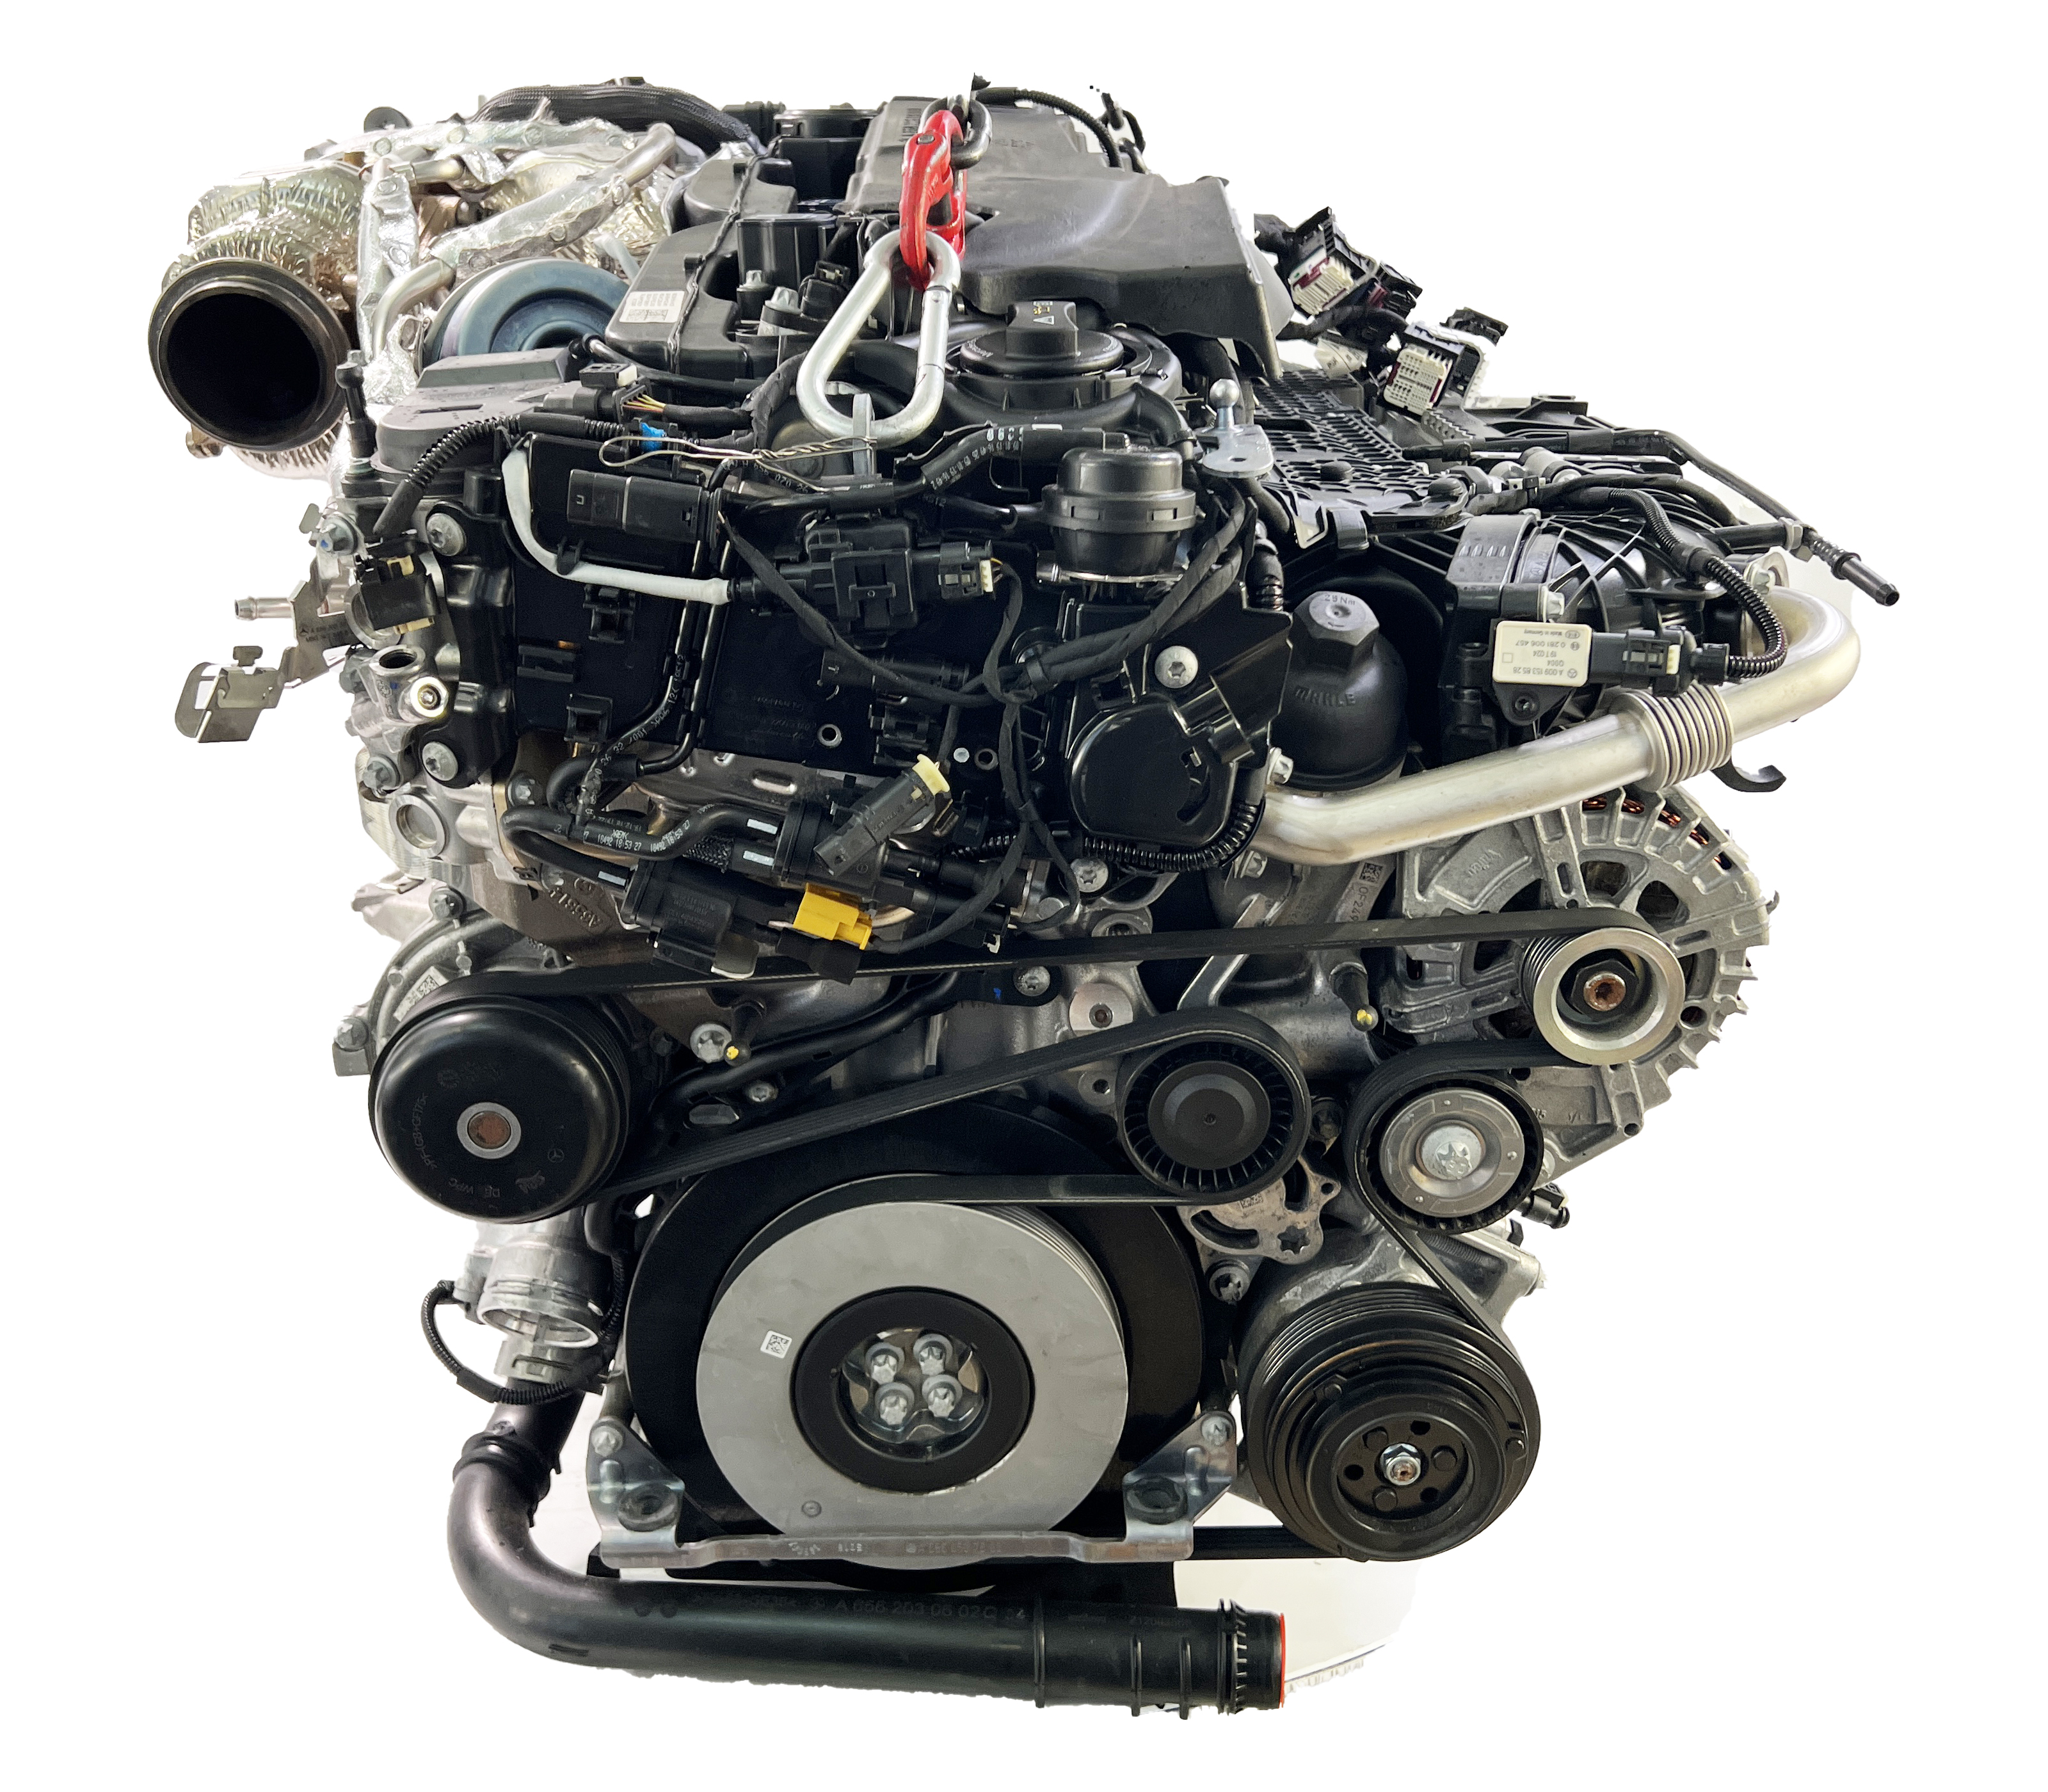 Den genialen Motor verpasst Deutschland: Mercedes-Benz E 350 (W213 MoPf)  Test - Autophorie 